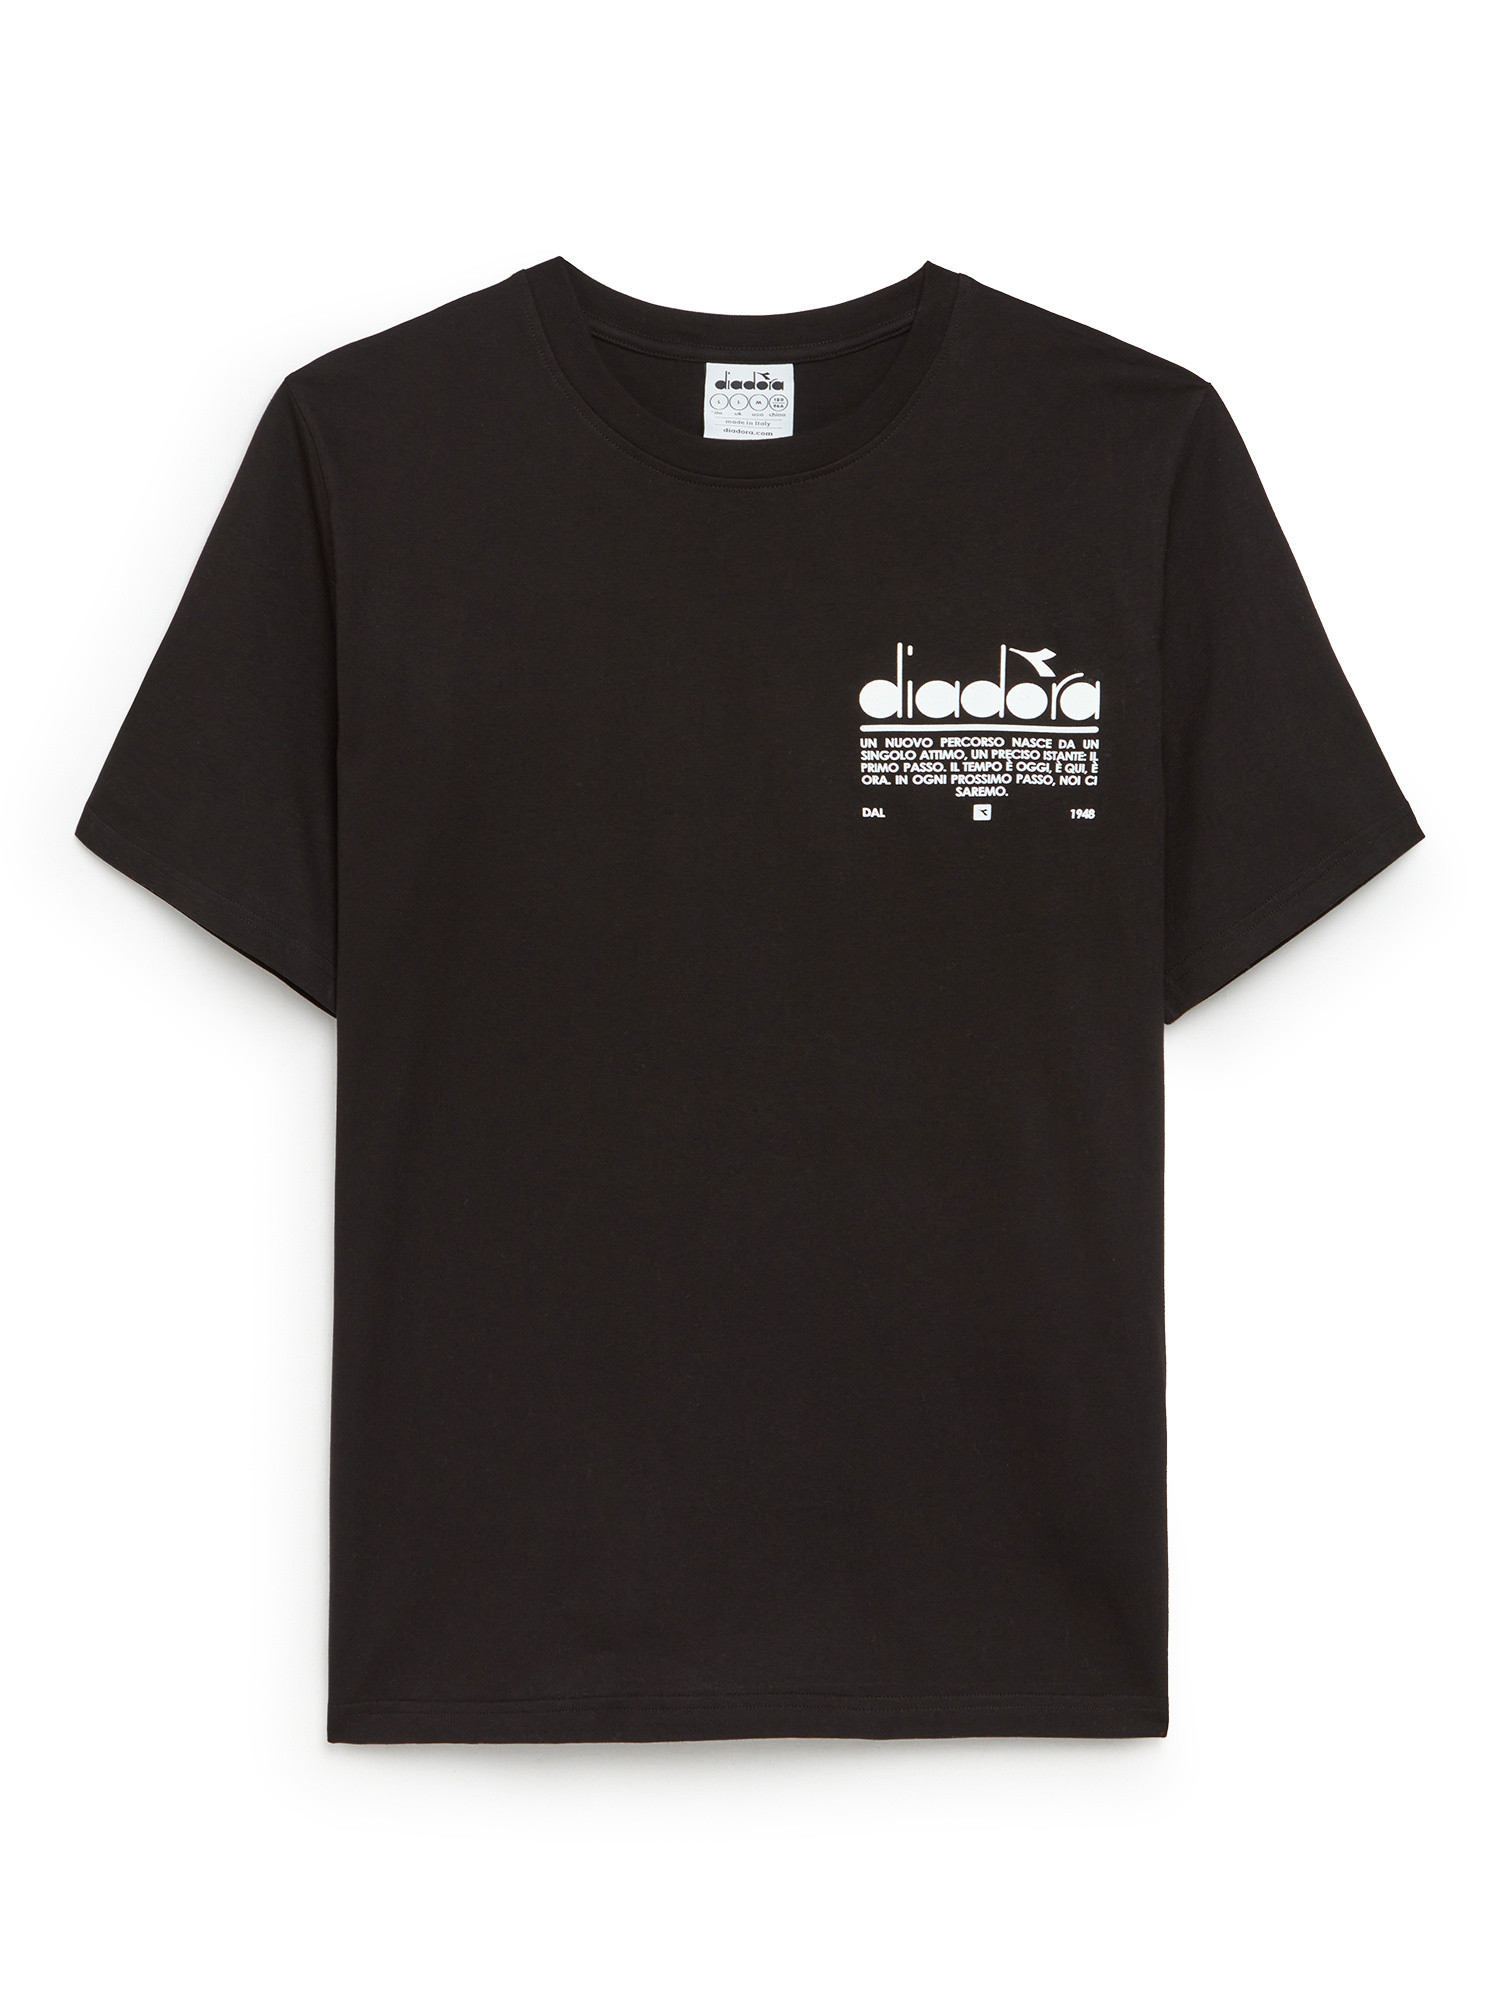 Diadora - Manifesto cotton T-shirt, Black, large image number 0